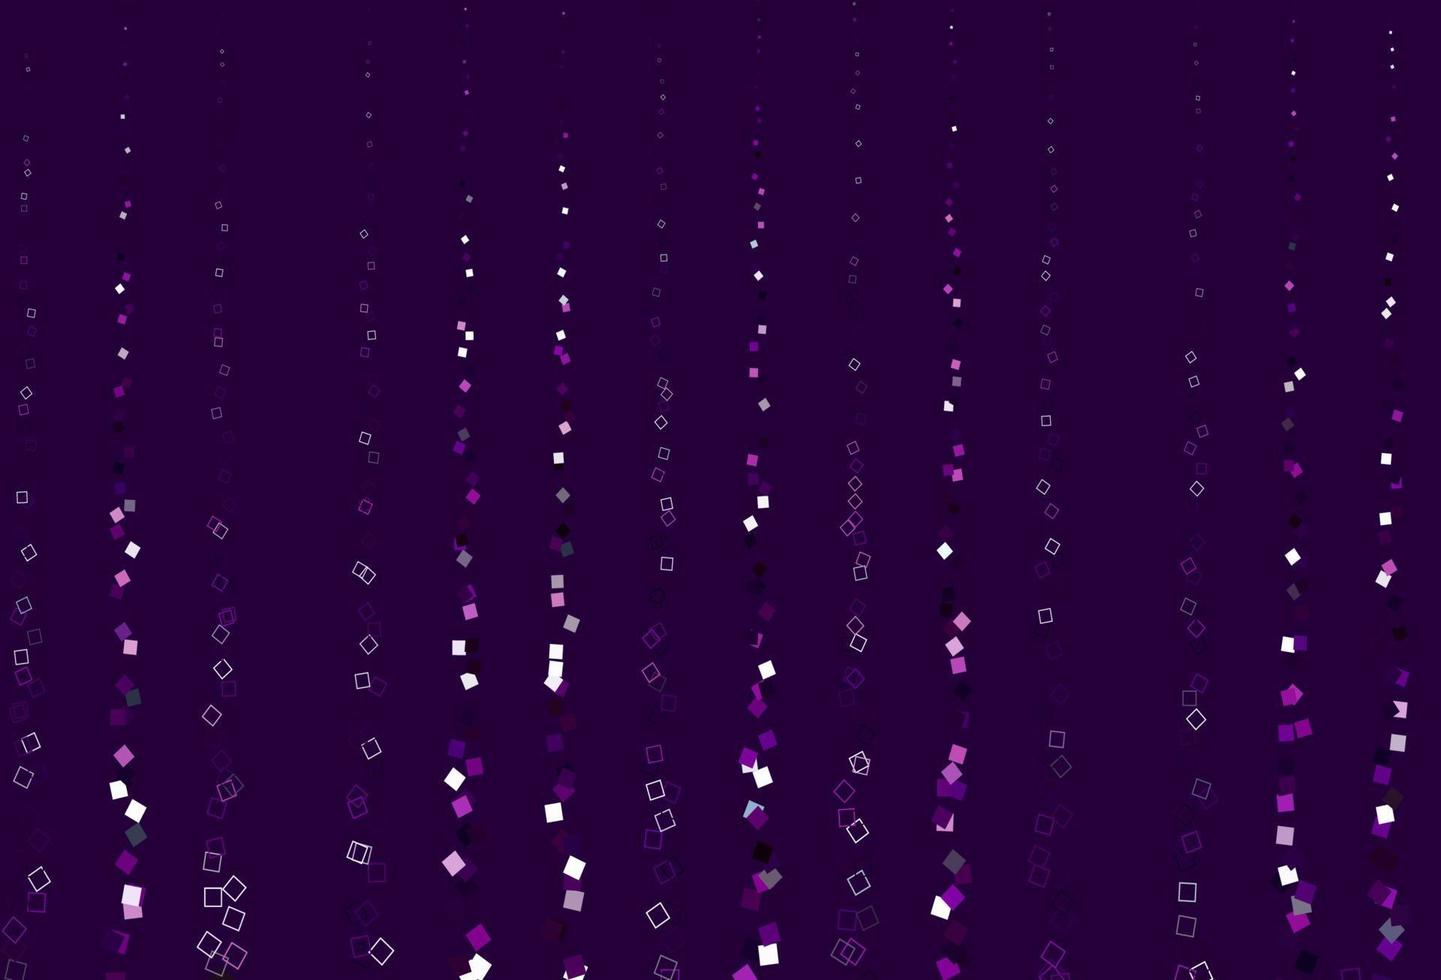 Fondo de vector púrpura claro con rectángulos.